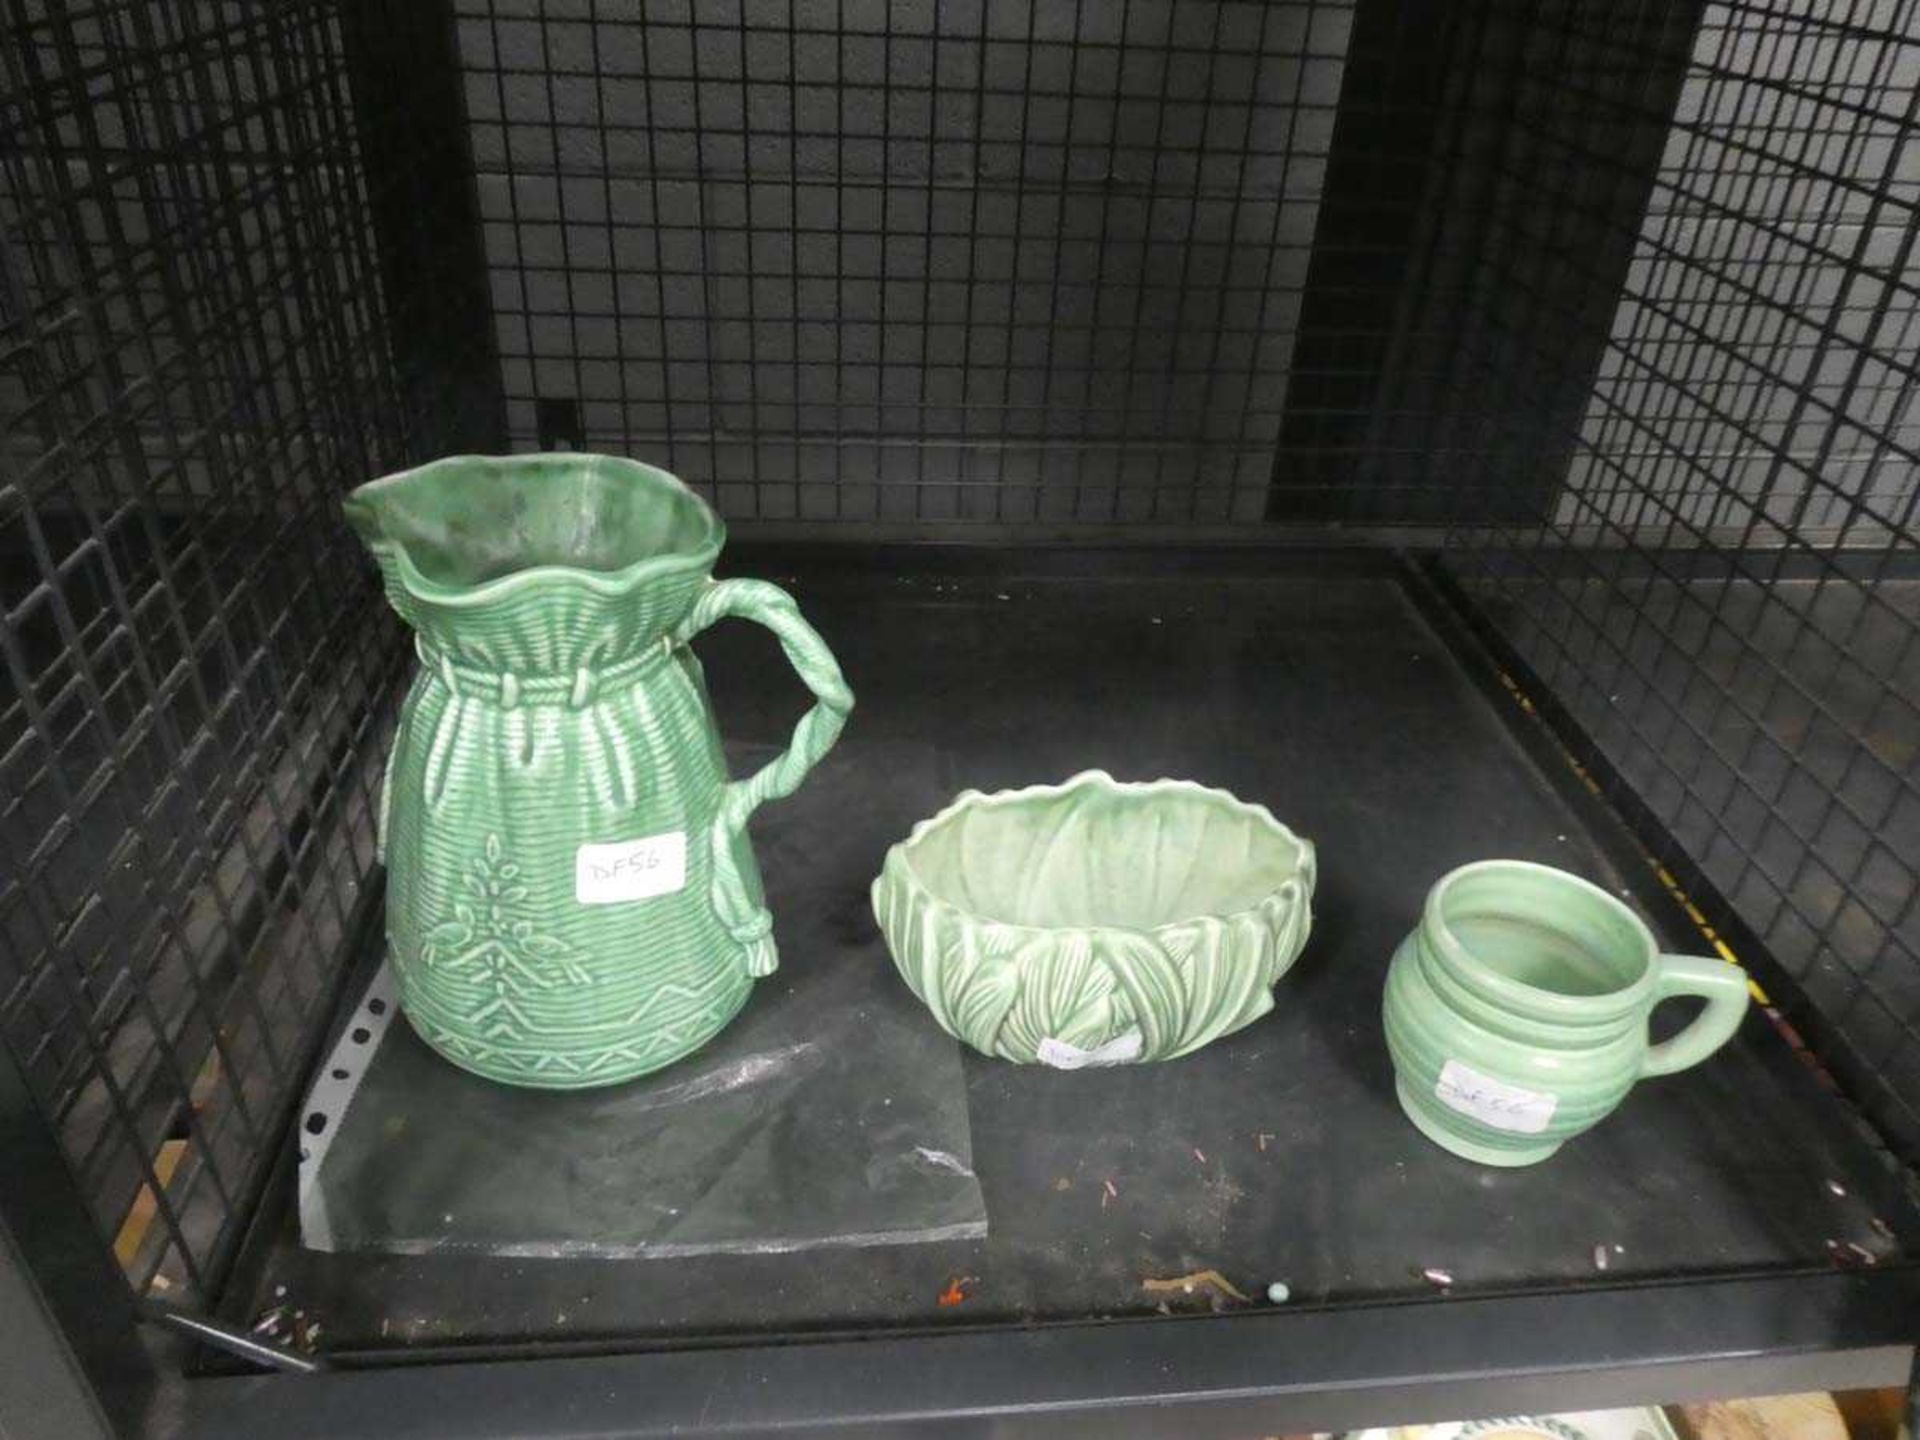 Cage containing 3 Royal Cauldon and Sylvac jugs, mug and dish